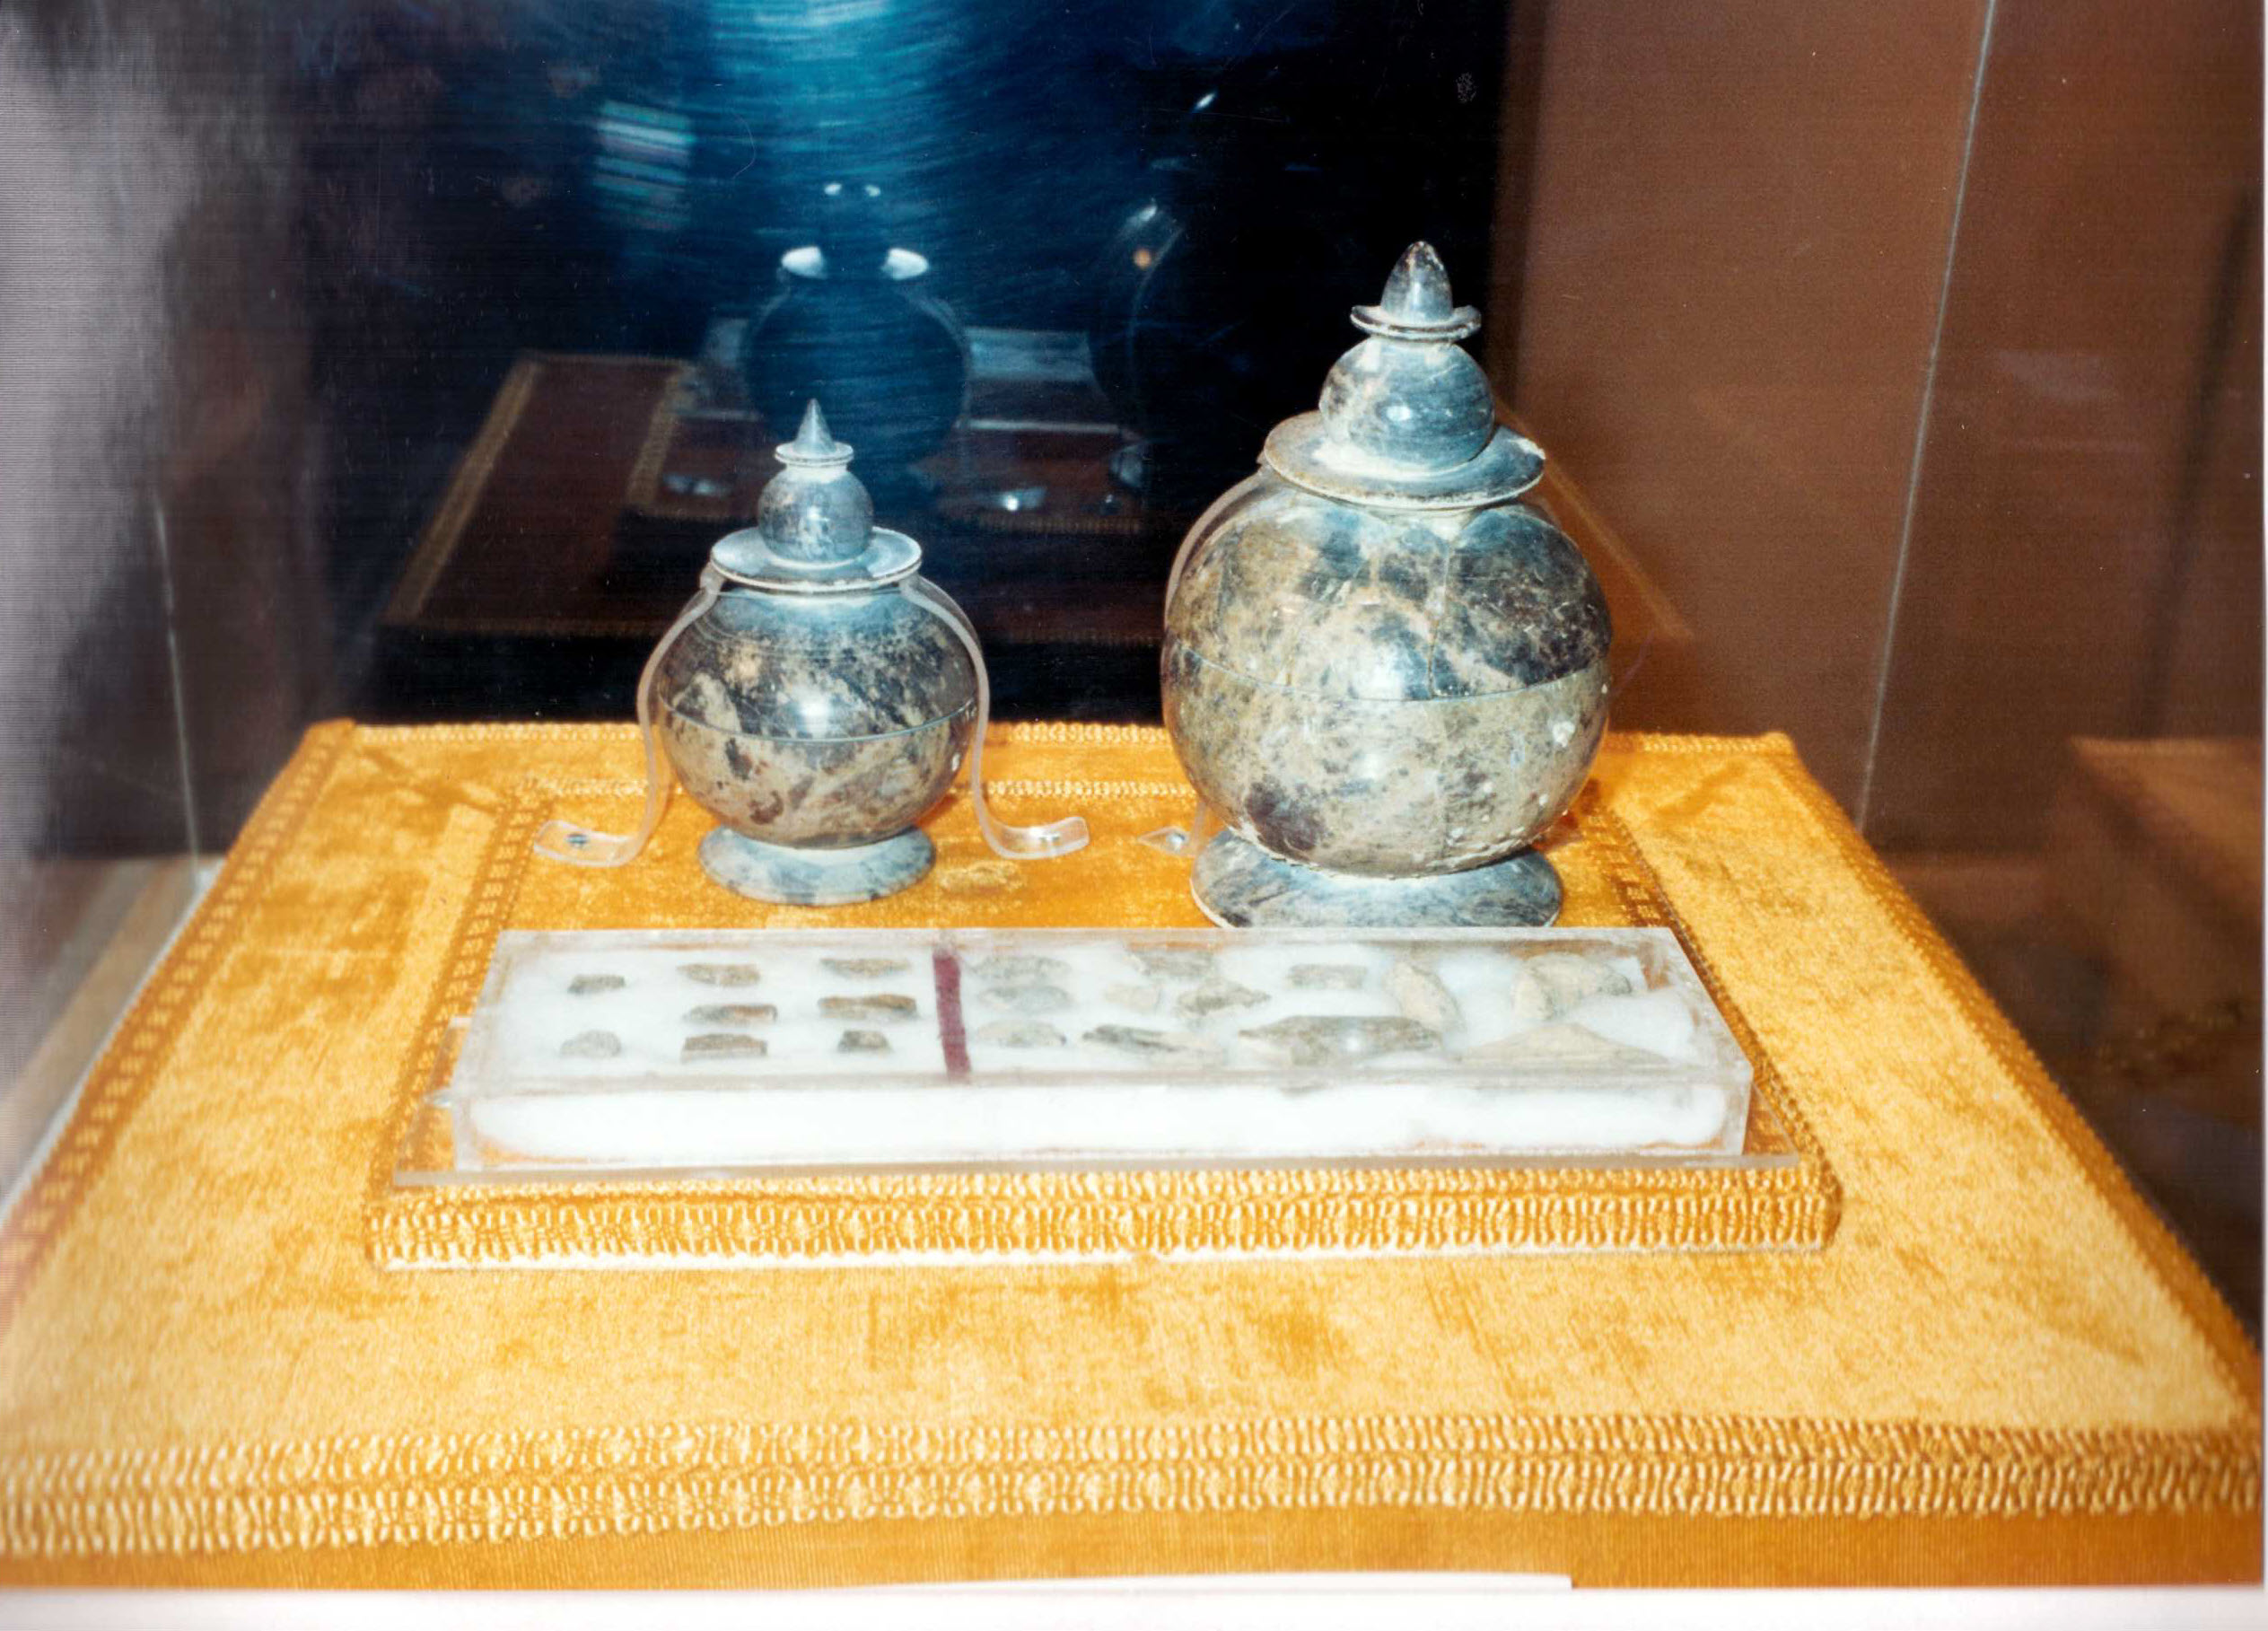 Relikwieën van de Boeddha afkomstig uit de Sakya stupa. Gefotografeerd in het museum van Delhi.